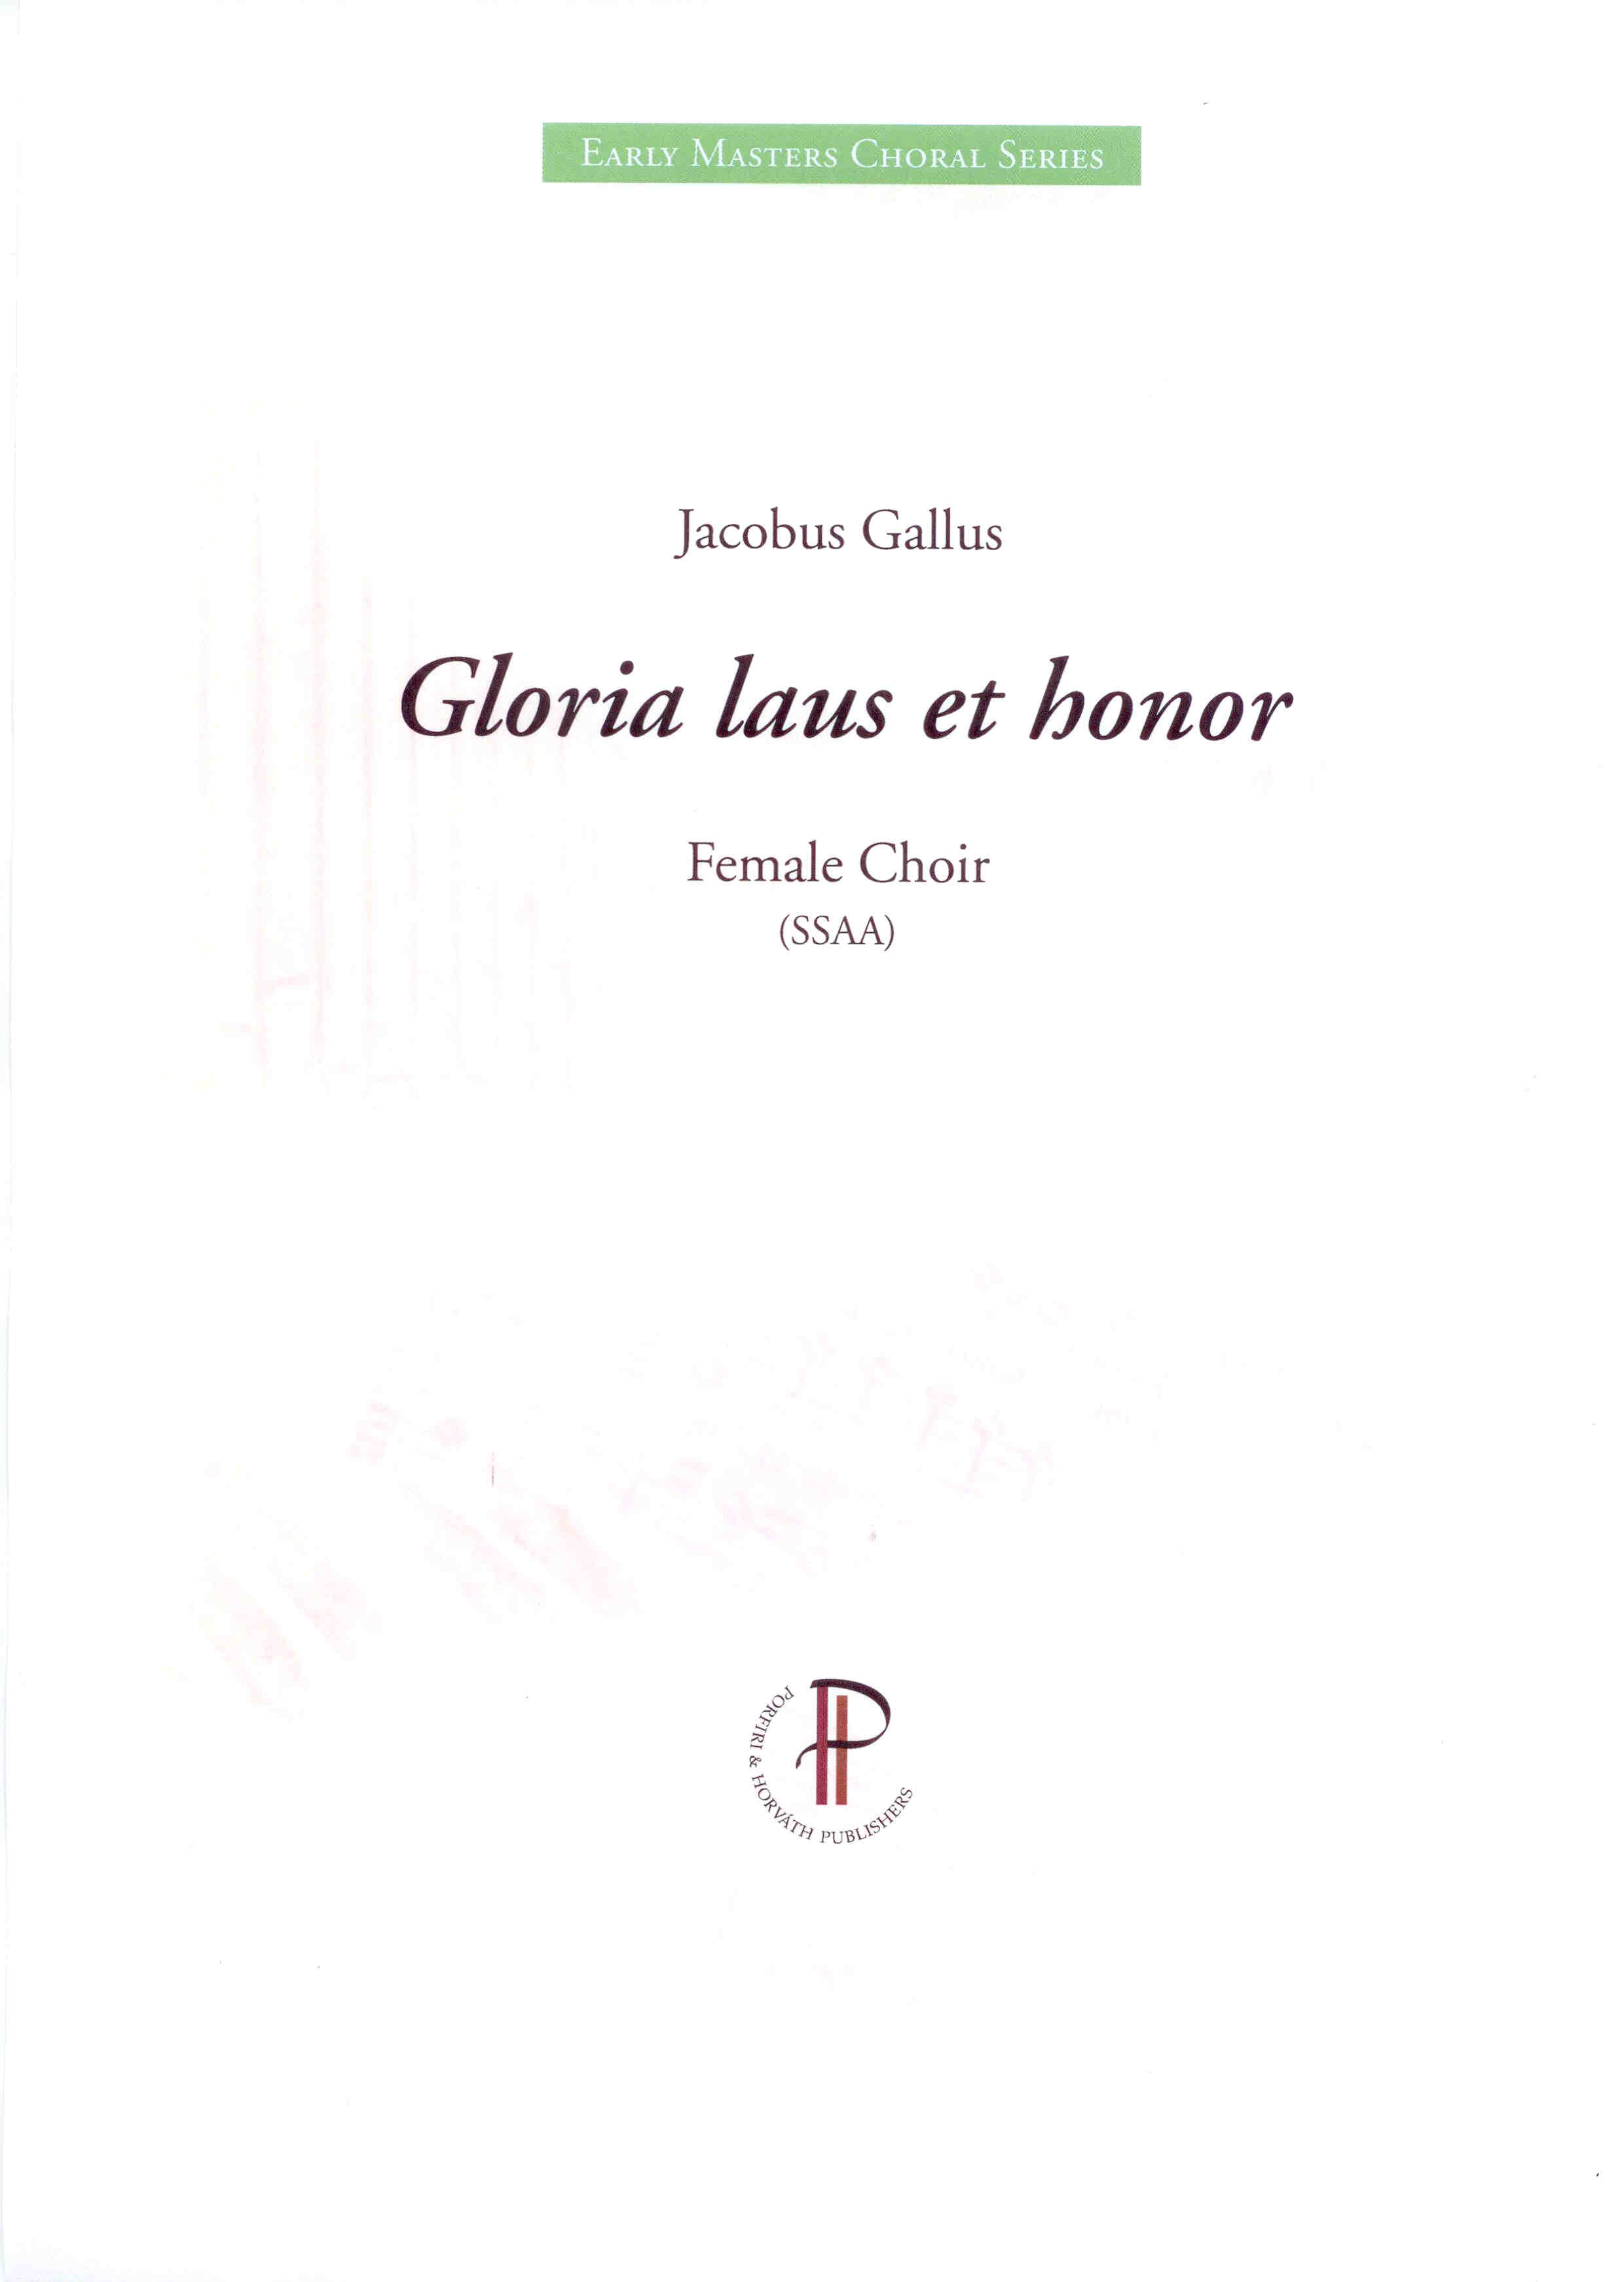 Gloria laus et honor - Show sample score